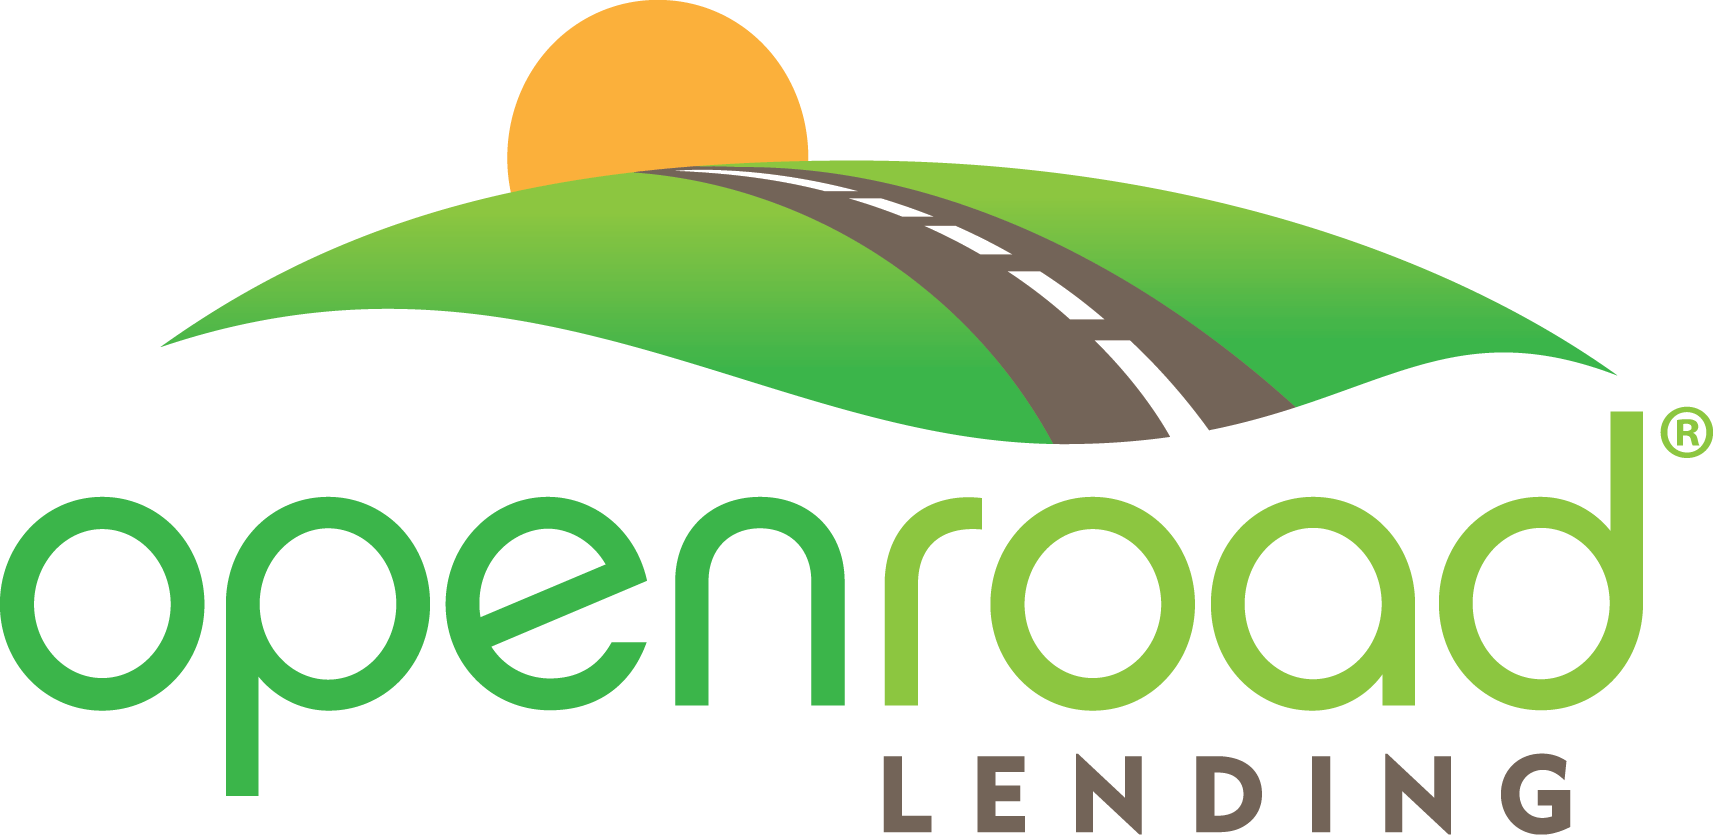 Car Refinance - Openroad Lending